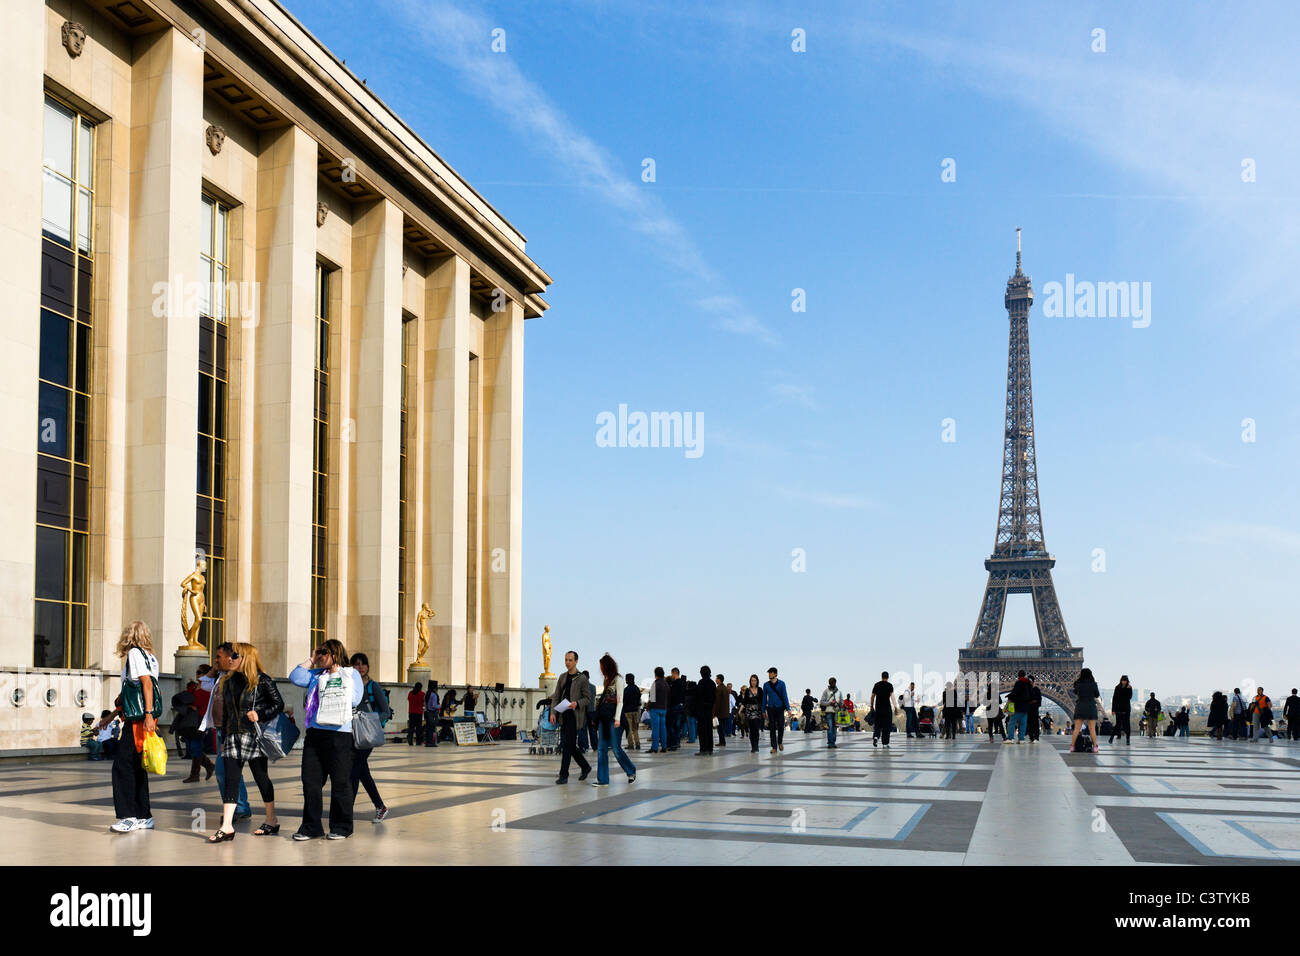 Le Palais de Chaillot et la Tour Eiffel vue du Trocadéro en fin d'après-midi, Paris, France Banque D'Images